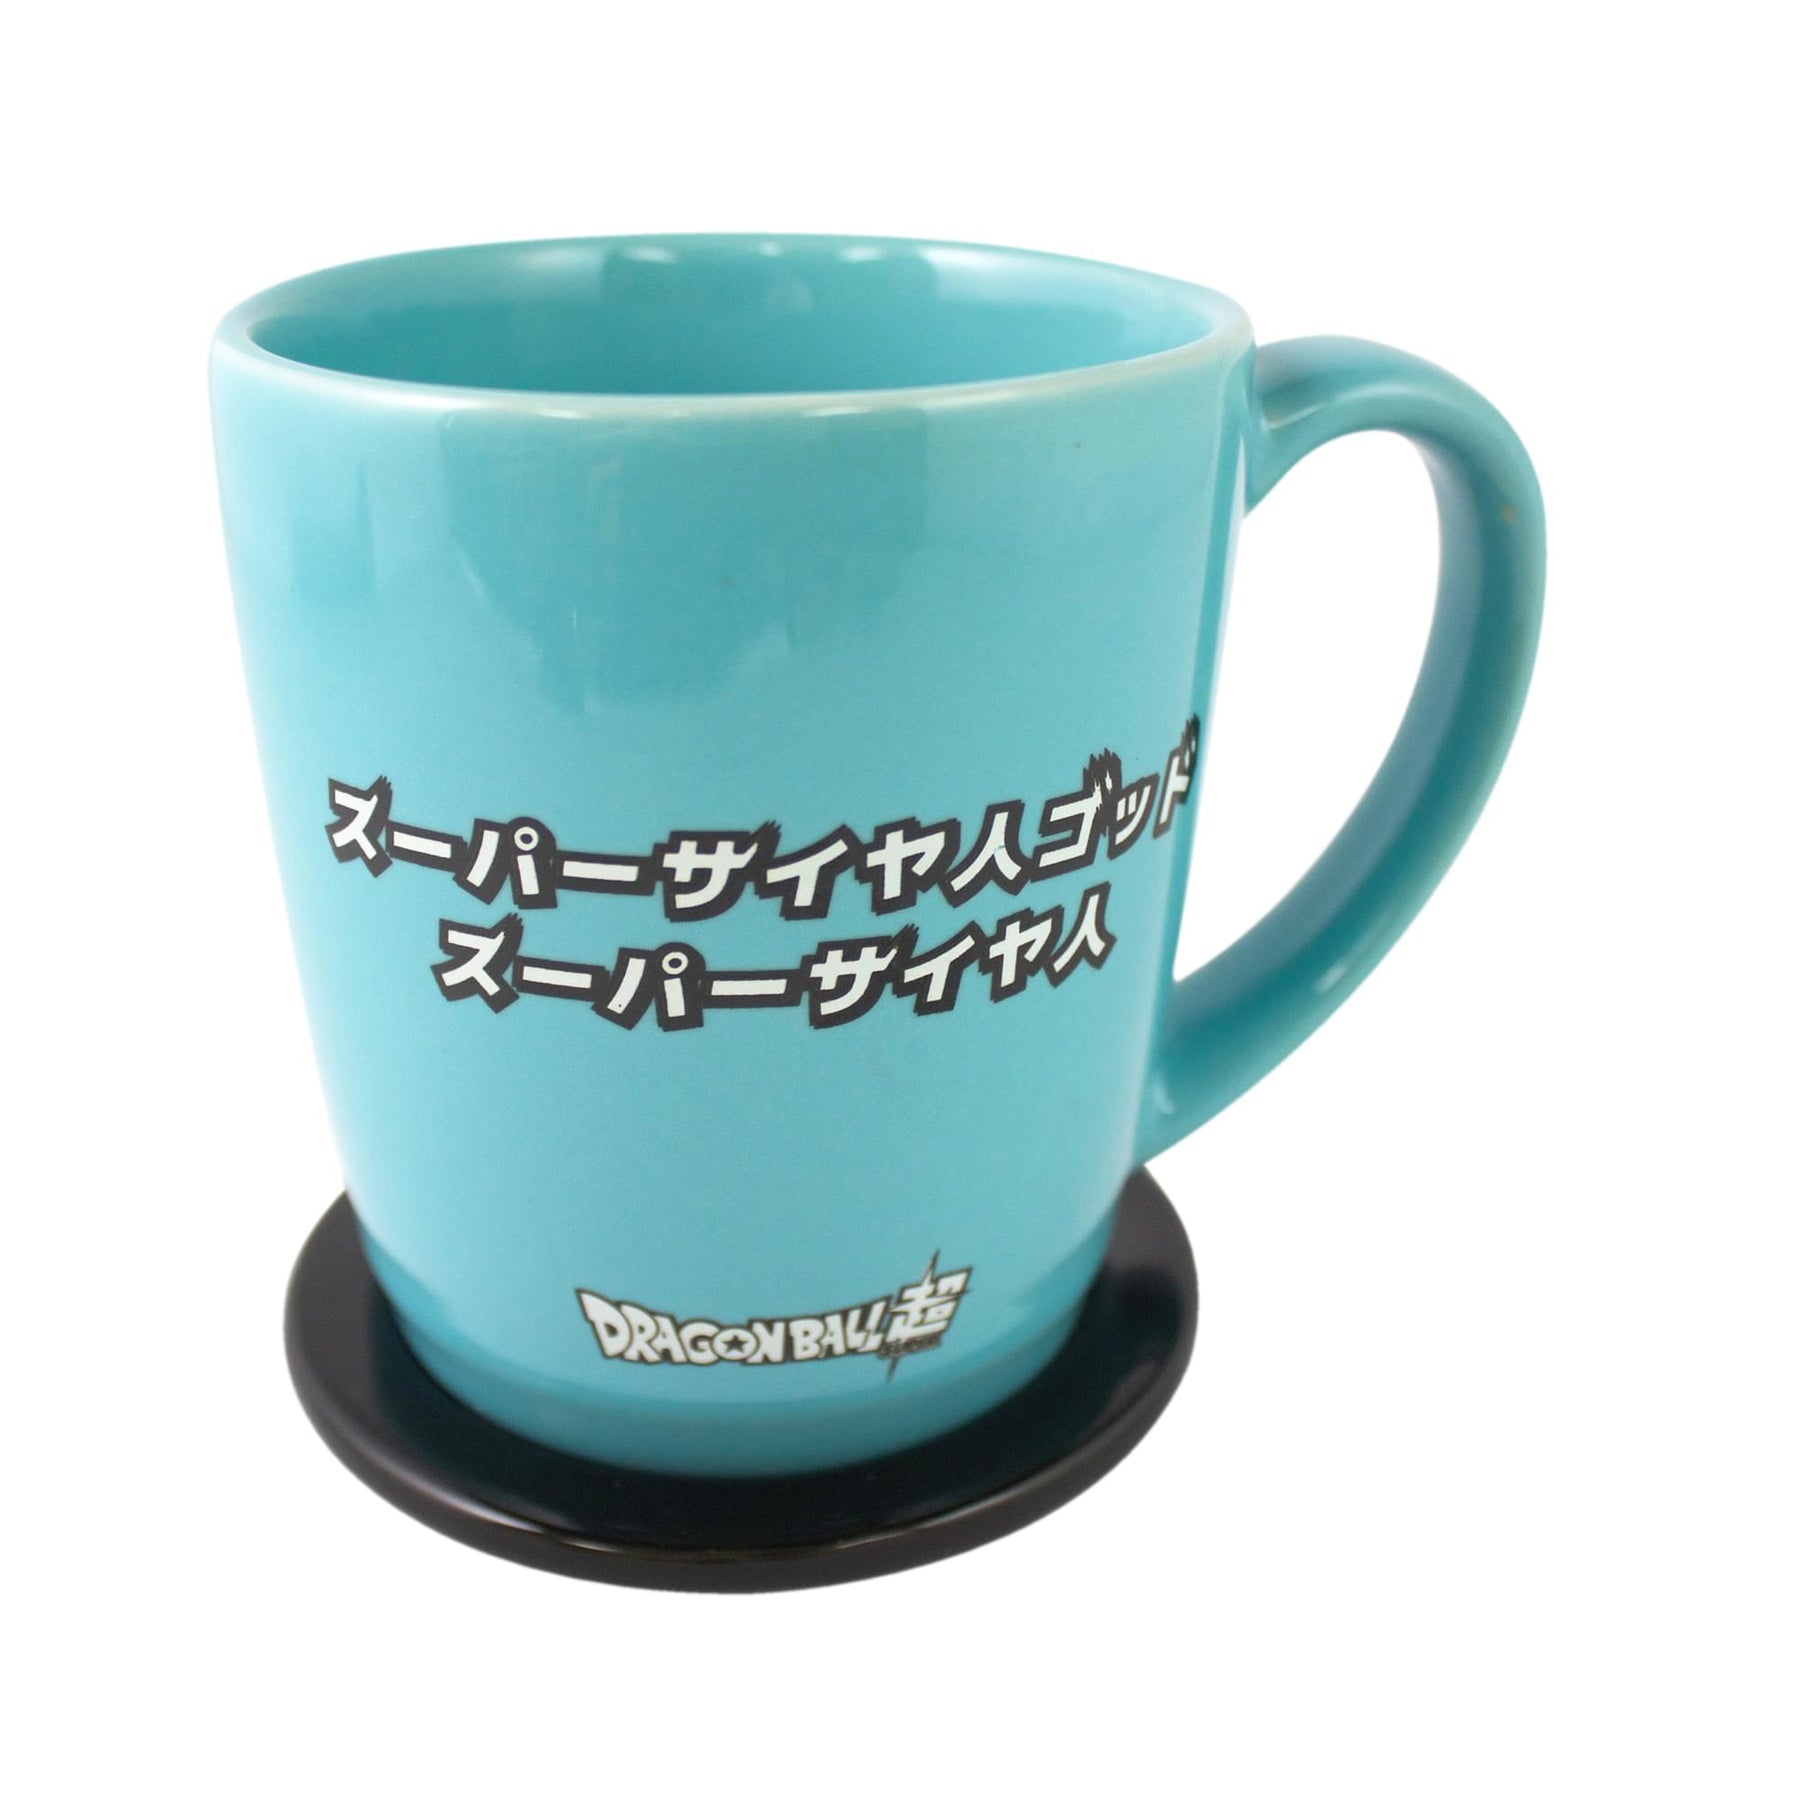 Dragon Ball Super Goku 14oz Ceramic Coffee Mug with Coaster